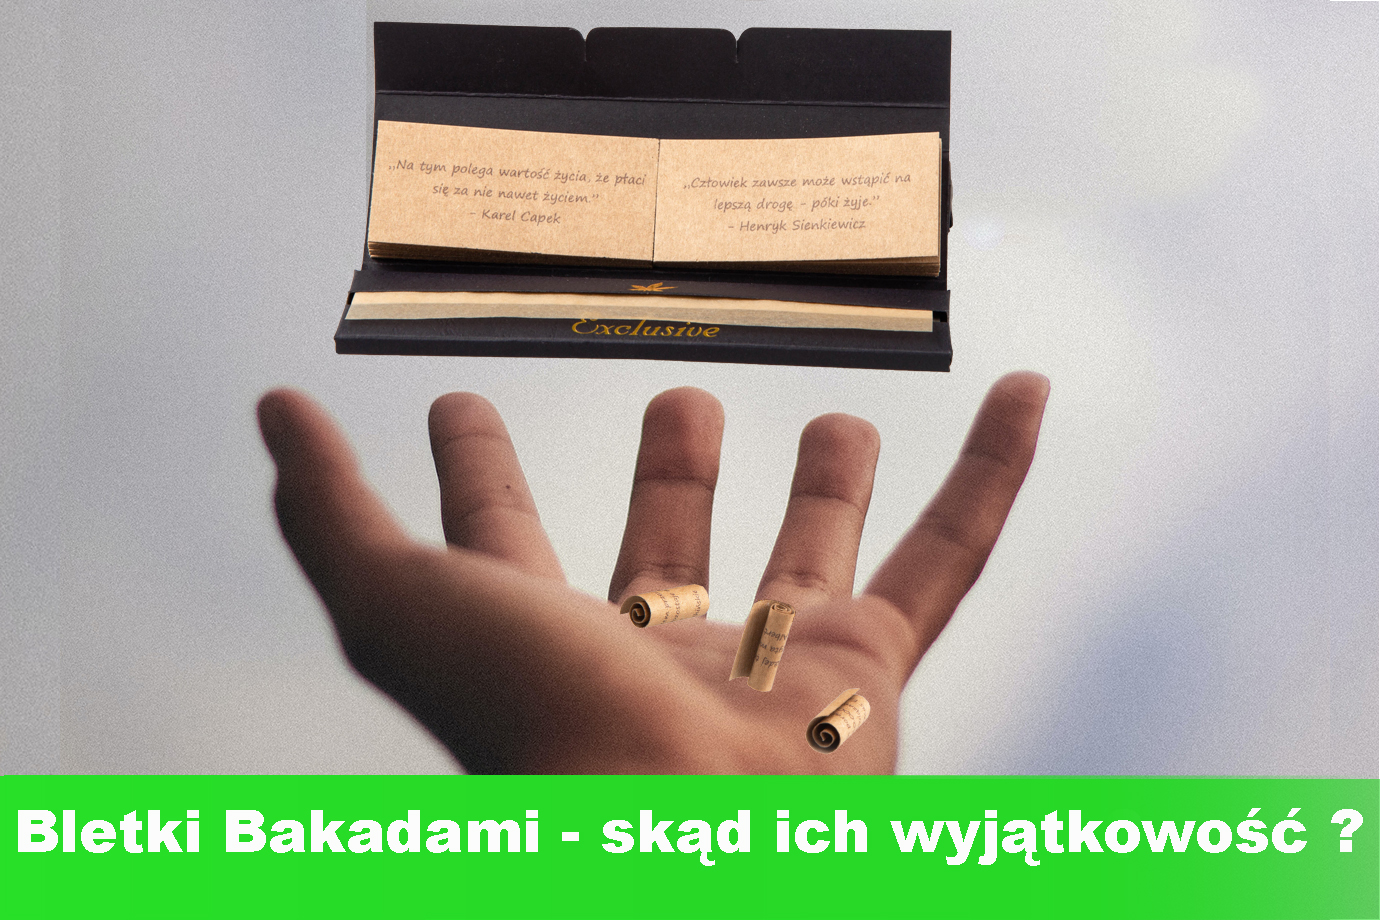 Wyjątkowe bletki Bakadami: gdzie kupić, prezent